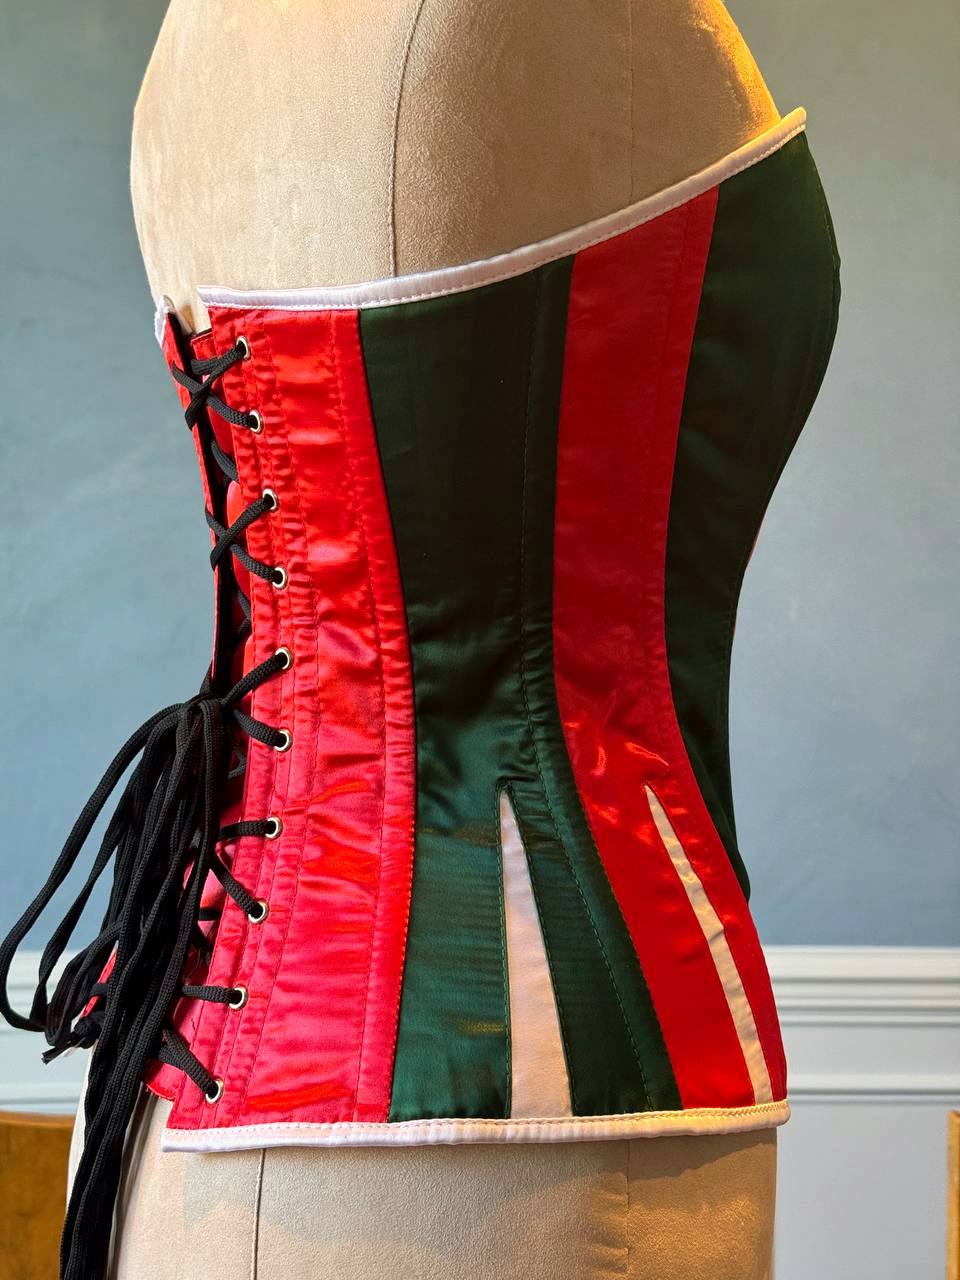 
                  
                    Corset rosso e verde in raso con Babbo Natale bianco. Il corsetto è realizzato personalmente secondo le tue misure.
                  
                